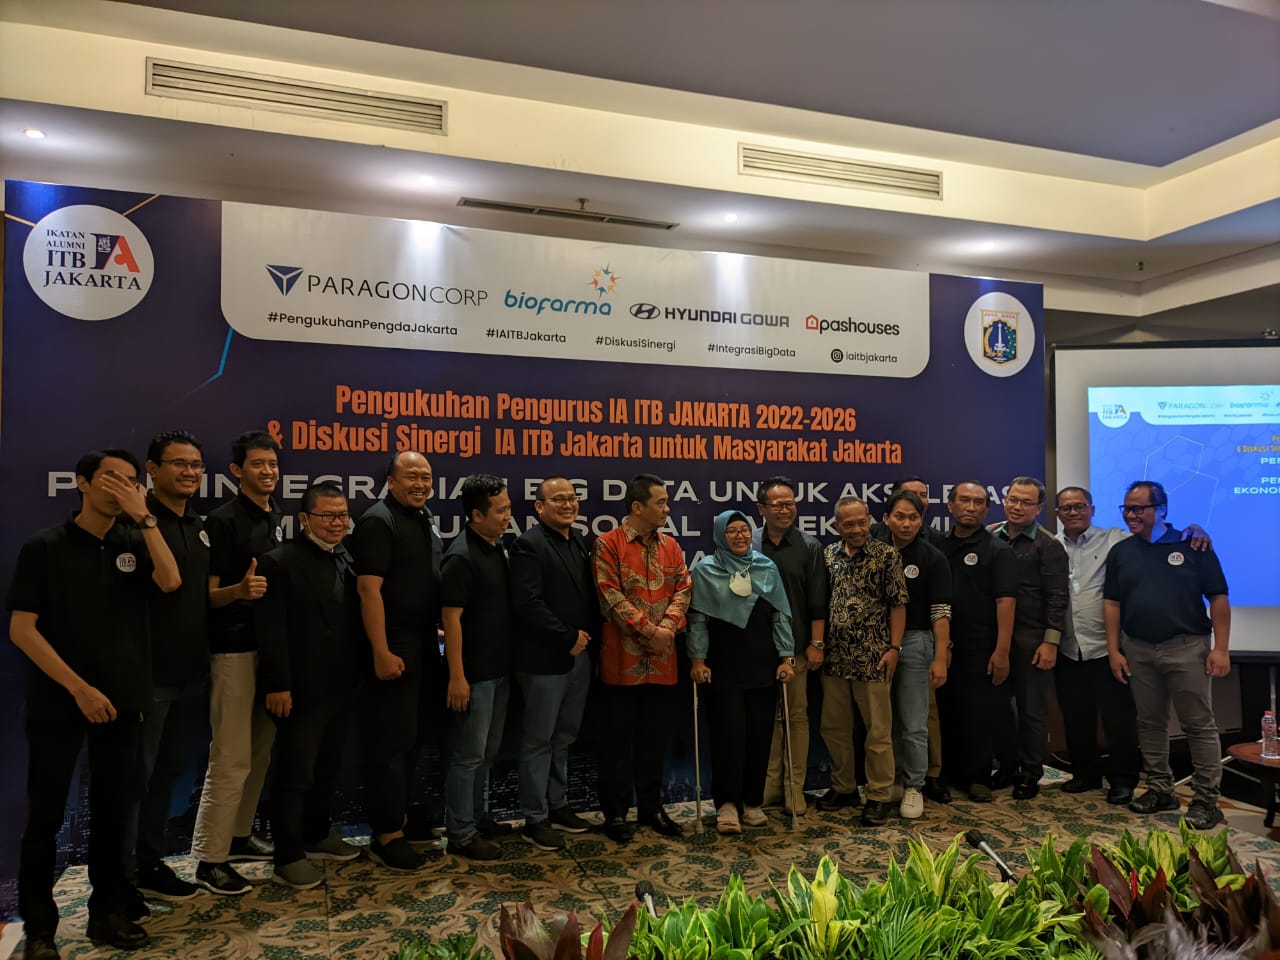 Ikatan Alumni Institut Teknologi Bandung (IA ITB) Jakarta menggelar pengukuhan pengurus IA ITB periode 2022-2026 di Hotel Bidakara, Jakarta, Jumat (16/9/2022). Foto: Istimewa.